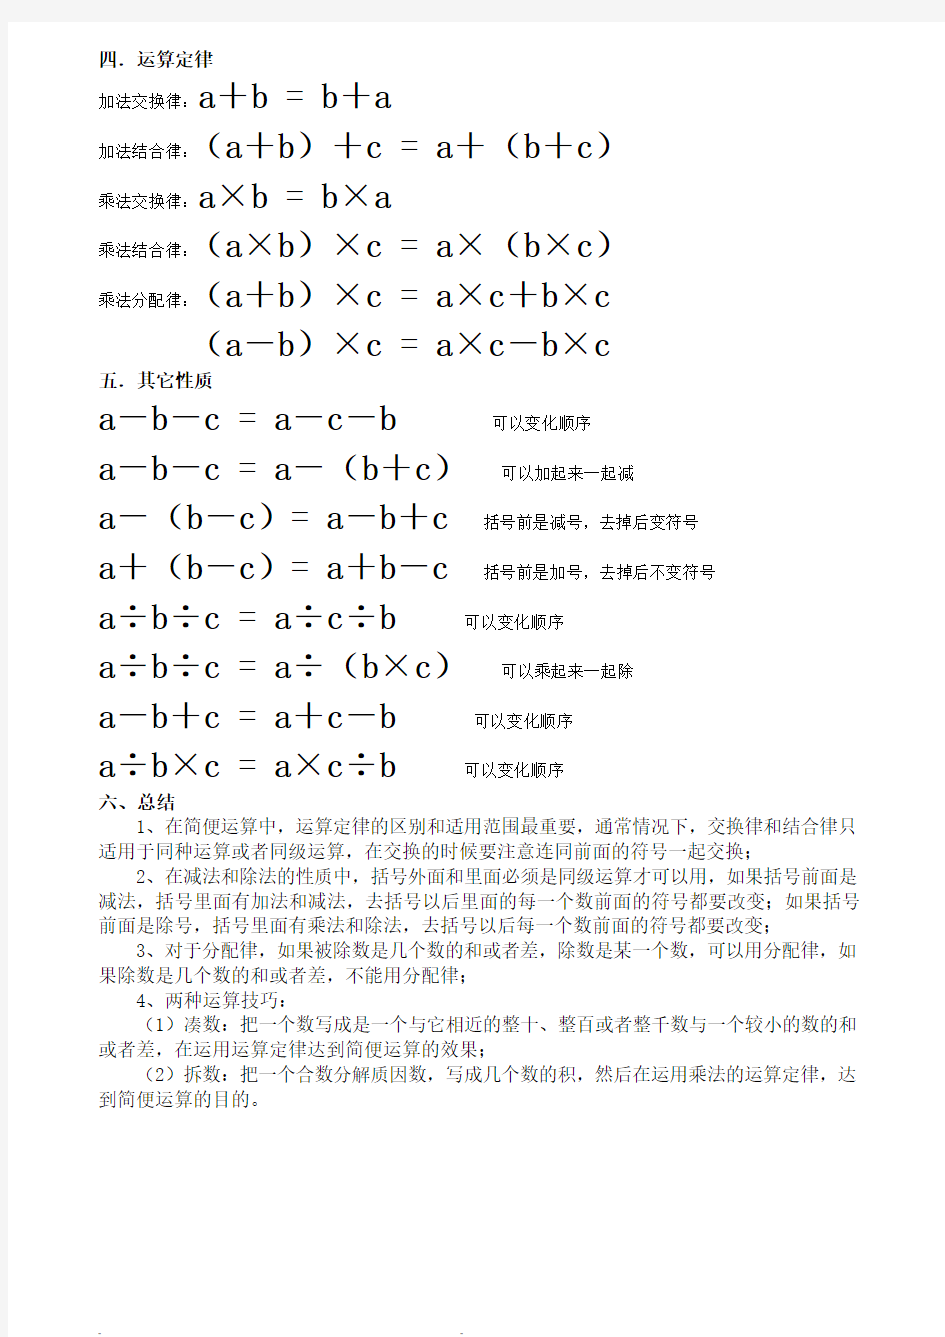 (完整版)四年级数学简便运算方法归类及公式